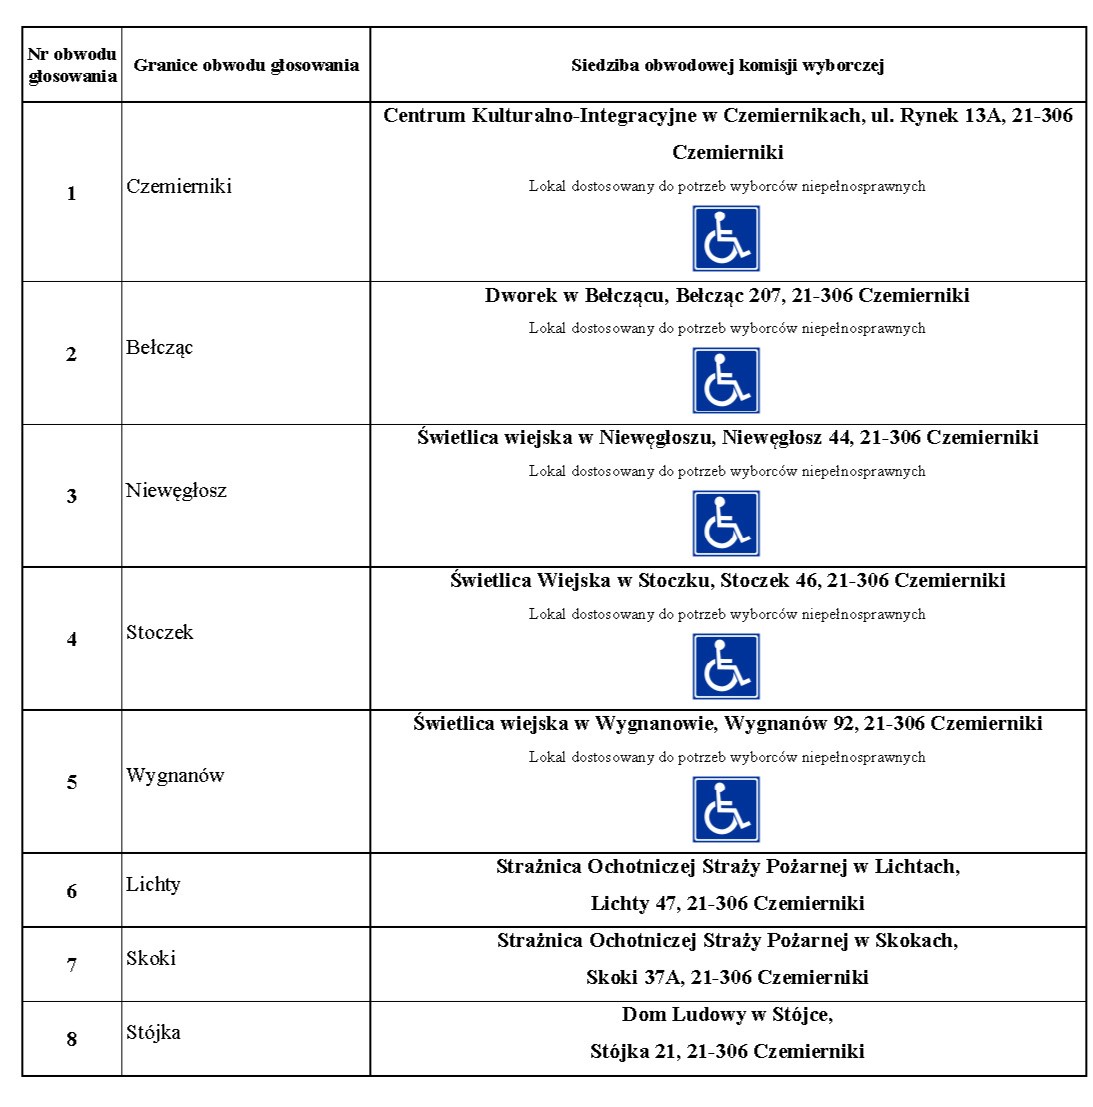 tabela z okręgami i siedzibami obwodowych komisji wyborczych